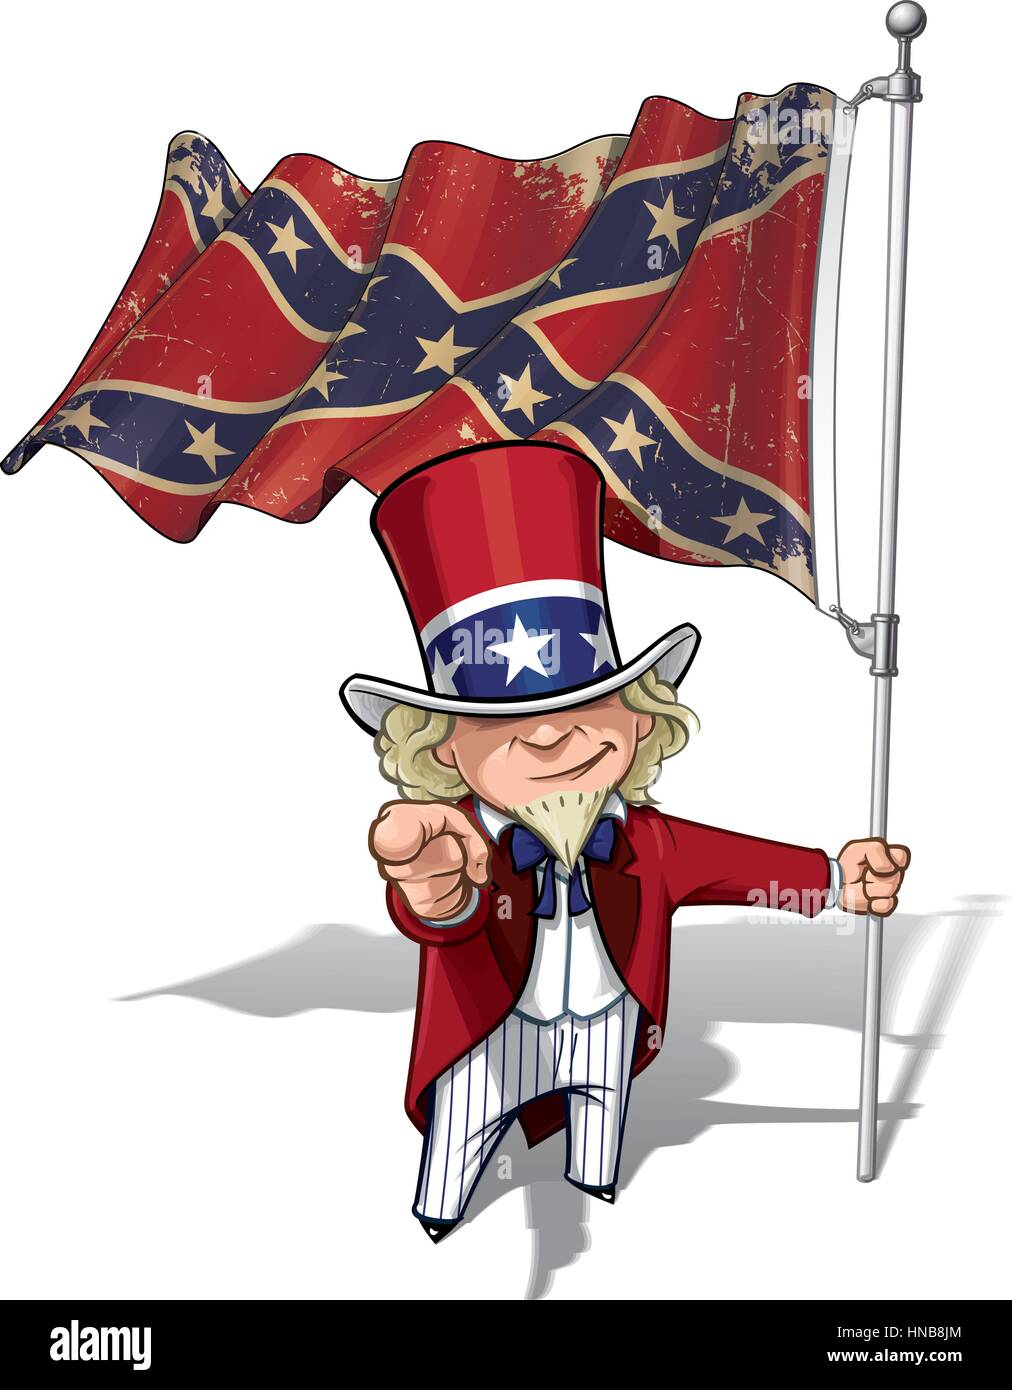 Vector Cartoon Illustration von Süden Uncle Sam hält ein winken ein American civil war Süden Flagge (Stars And Bars), zeigen, "Ich will dich". Flagge der textur Stock Vektor